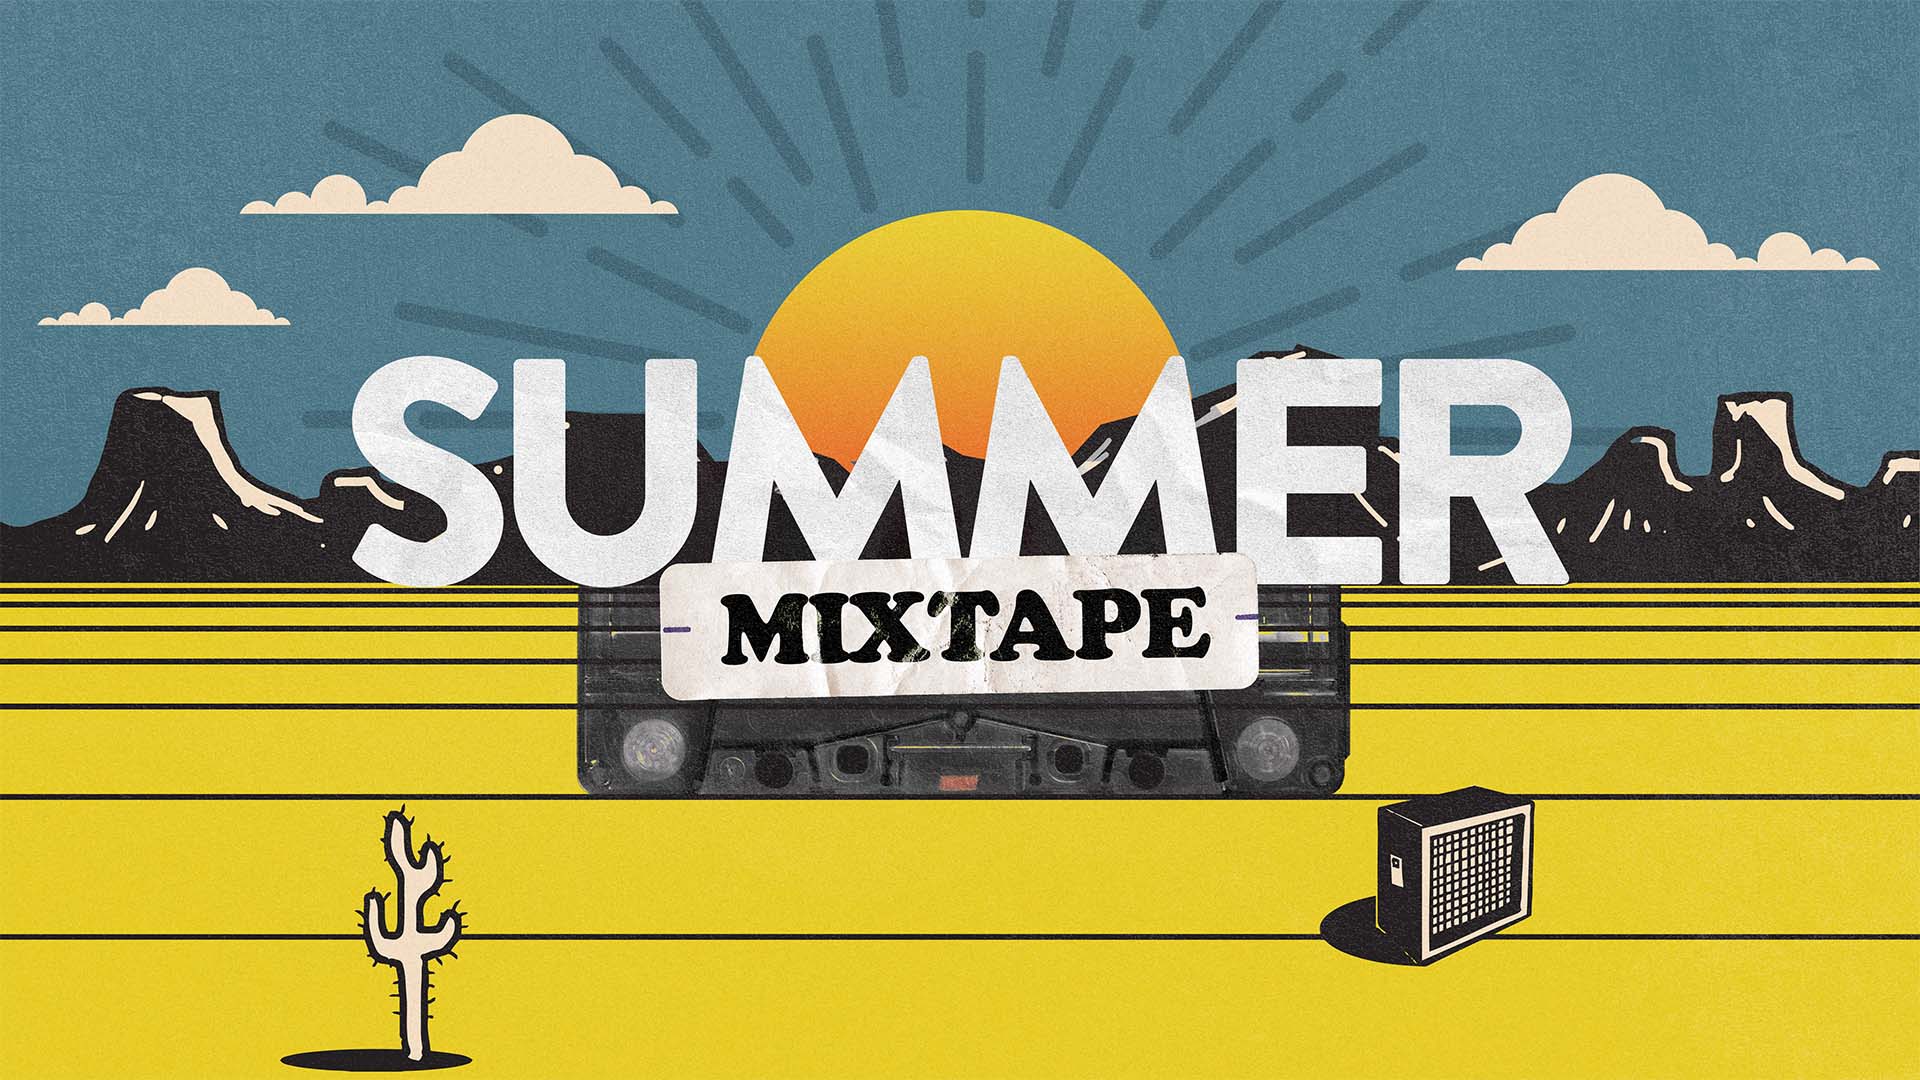 The Summer Mixtape